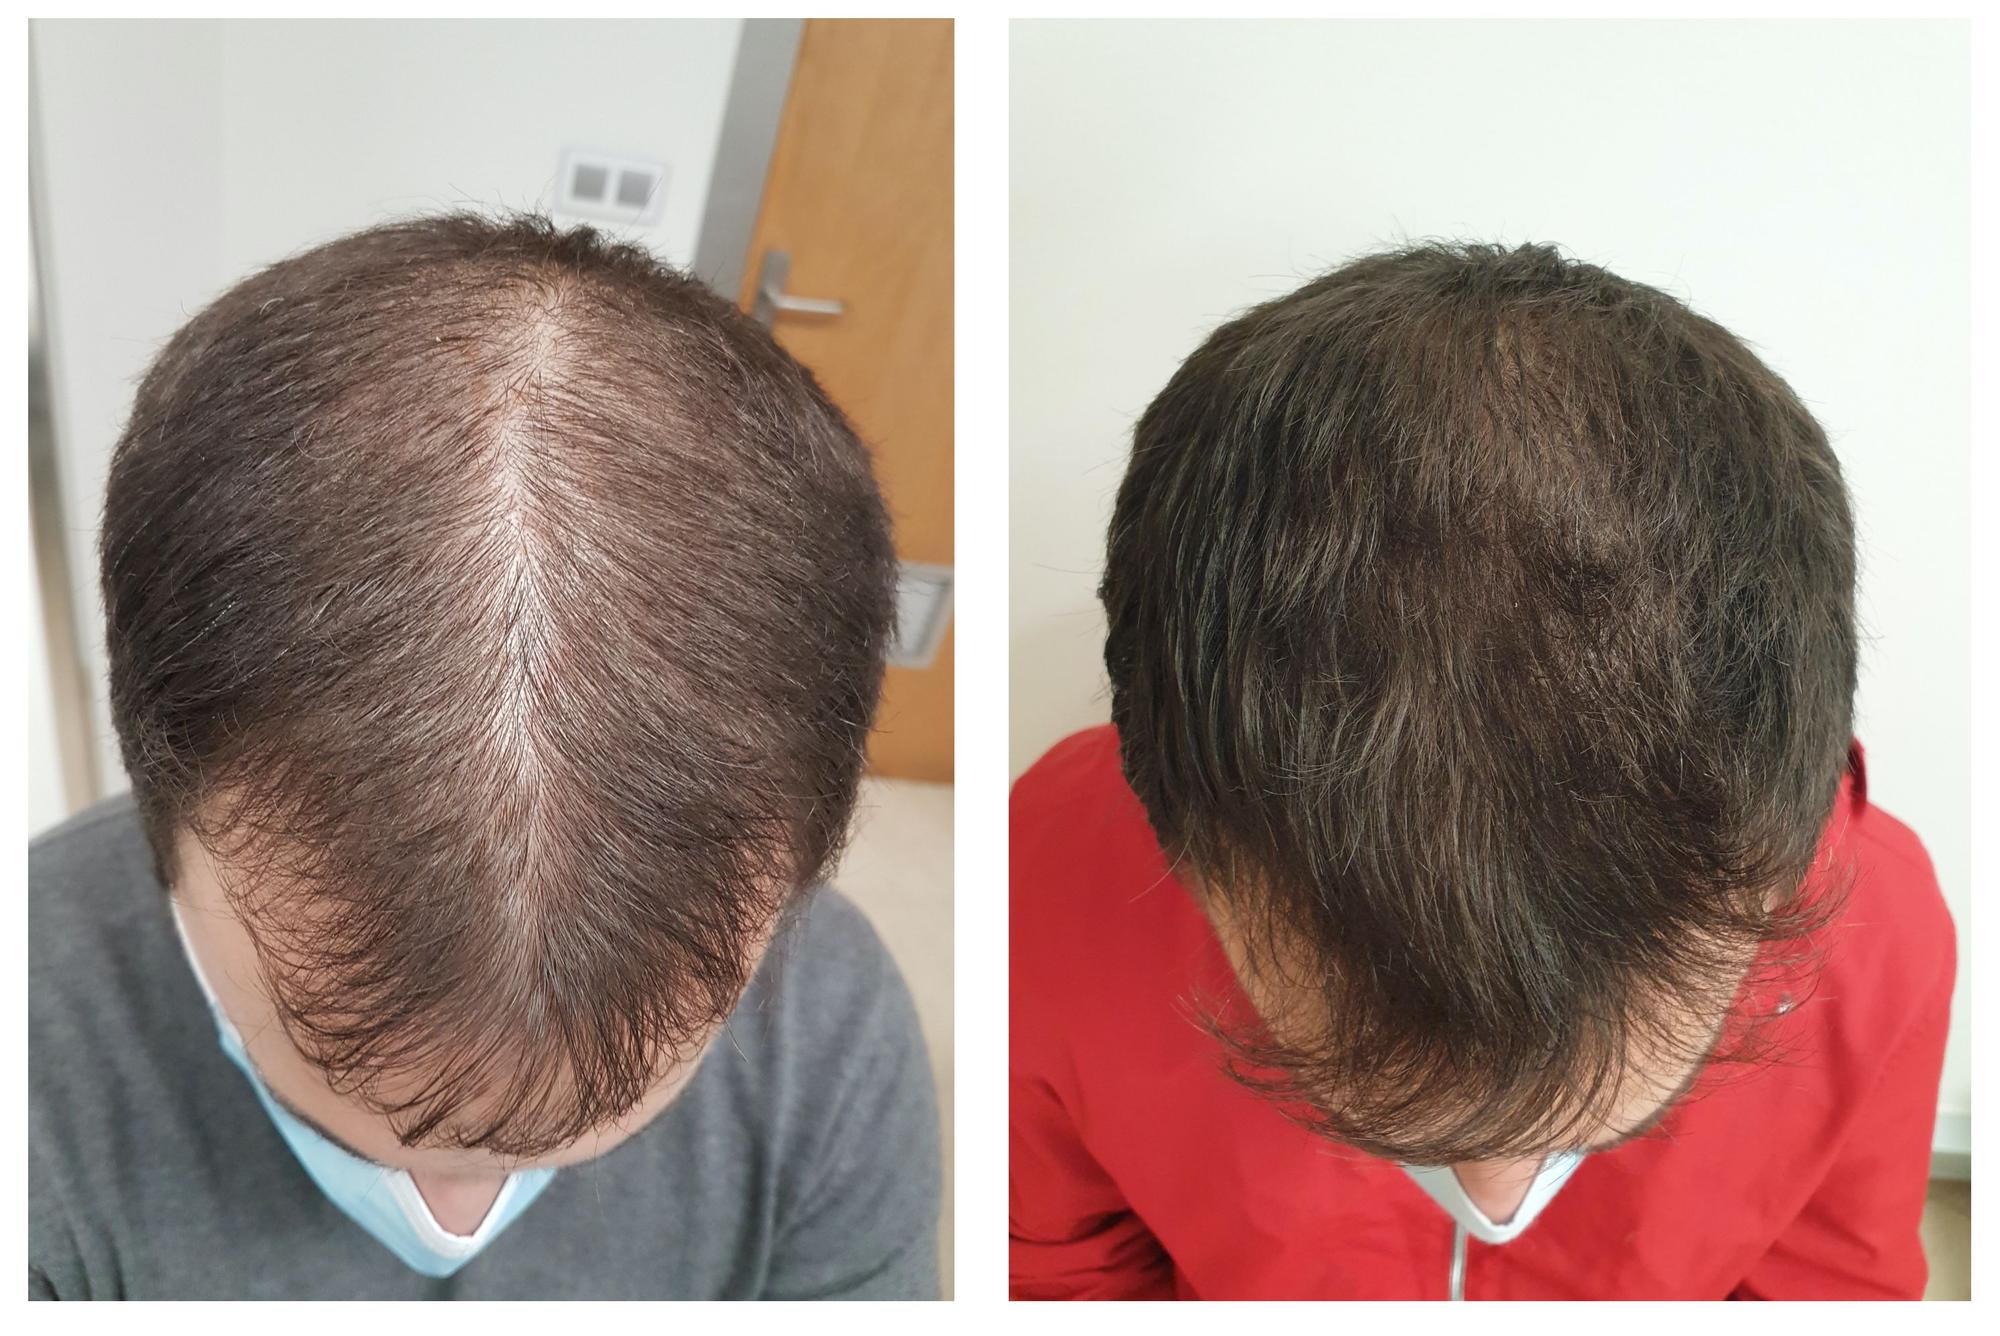 Tratamientos contra la alopecia con resultados visibles en seis meses -  Faro de Vigo